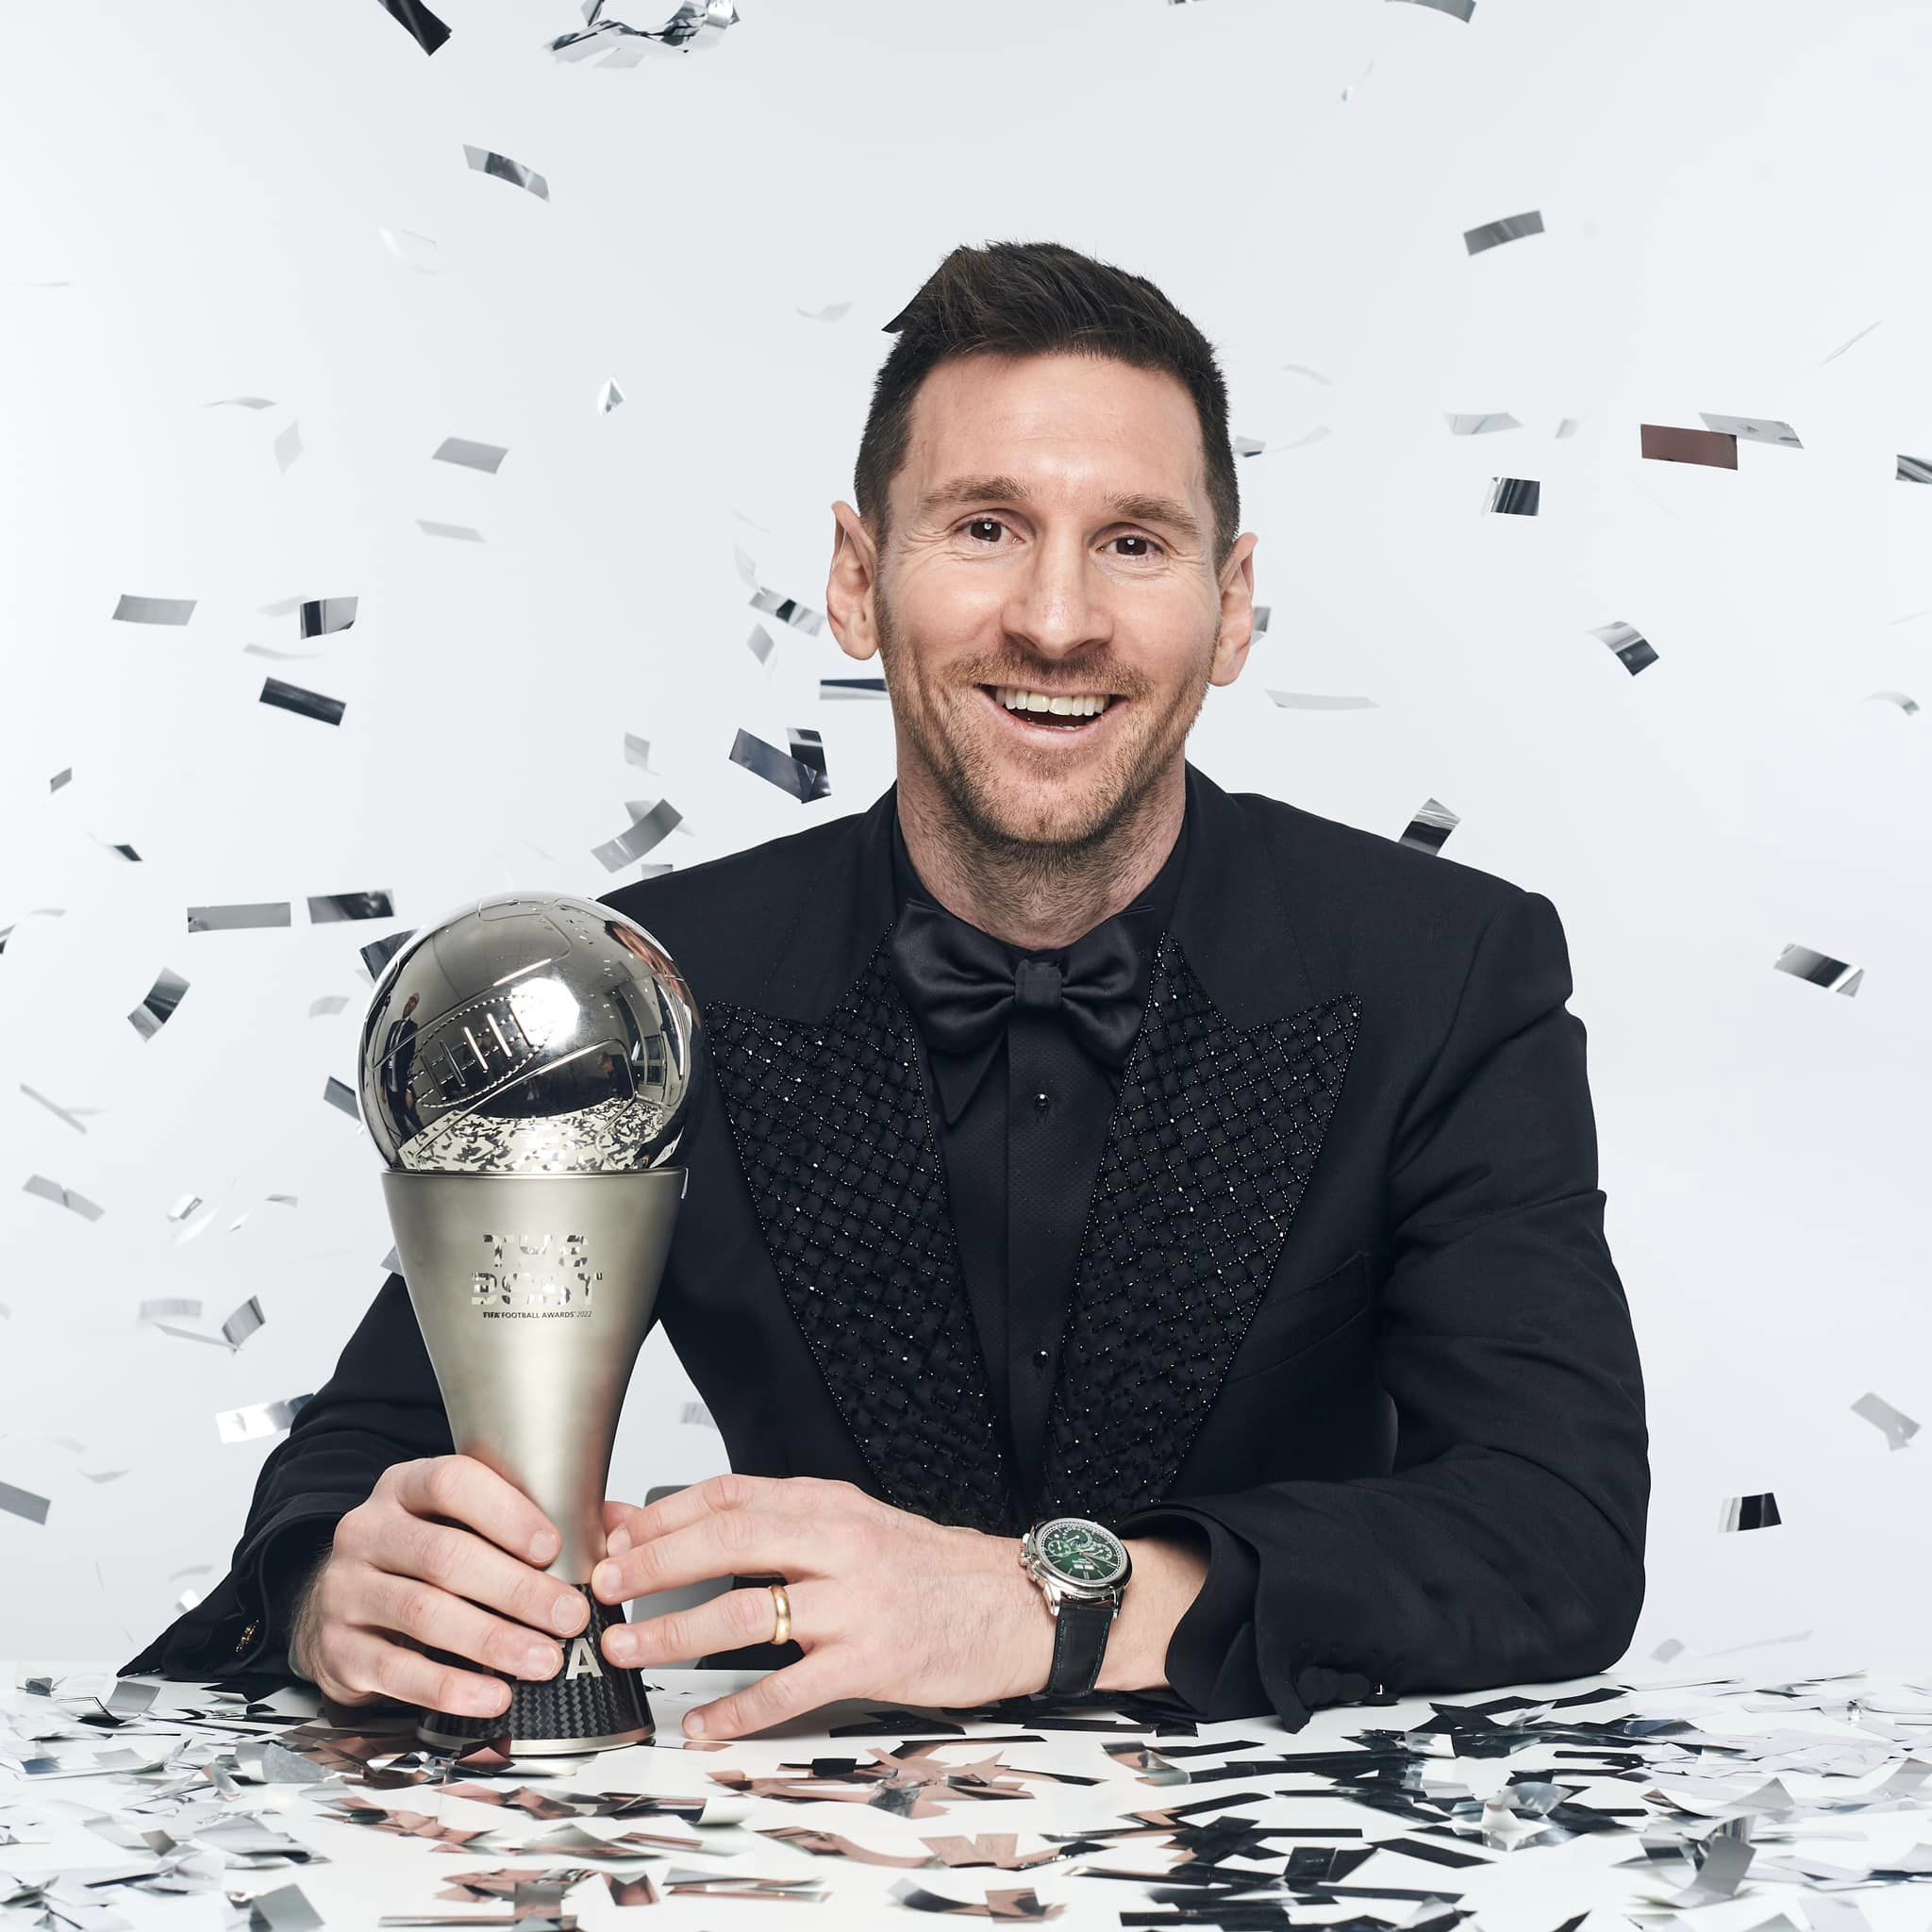 Jornal de Angola - Notícias - “FIFA THE BEST”:Messi eleito melhor jogador  do mundo